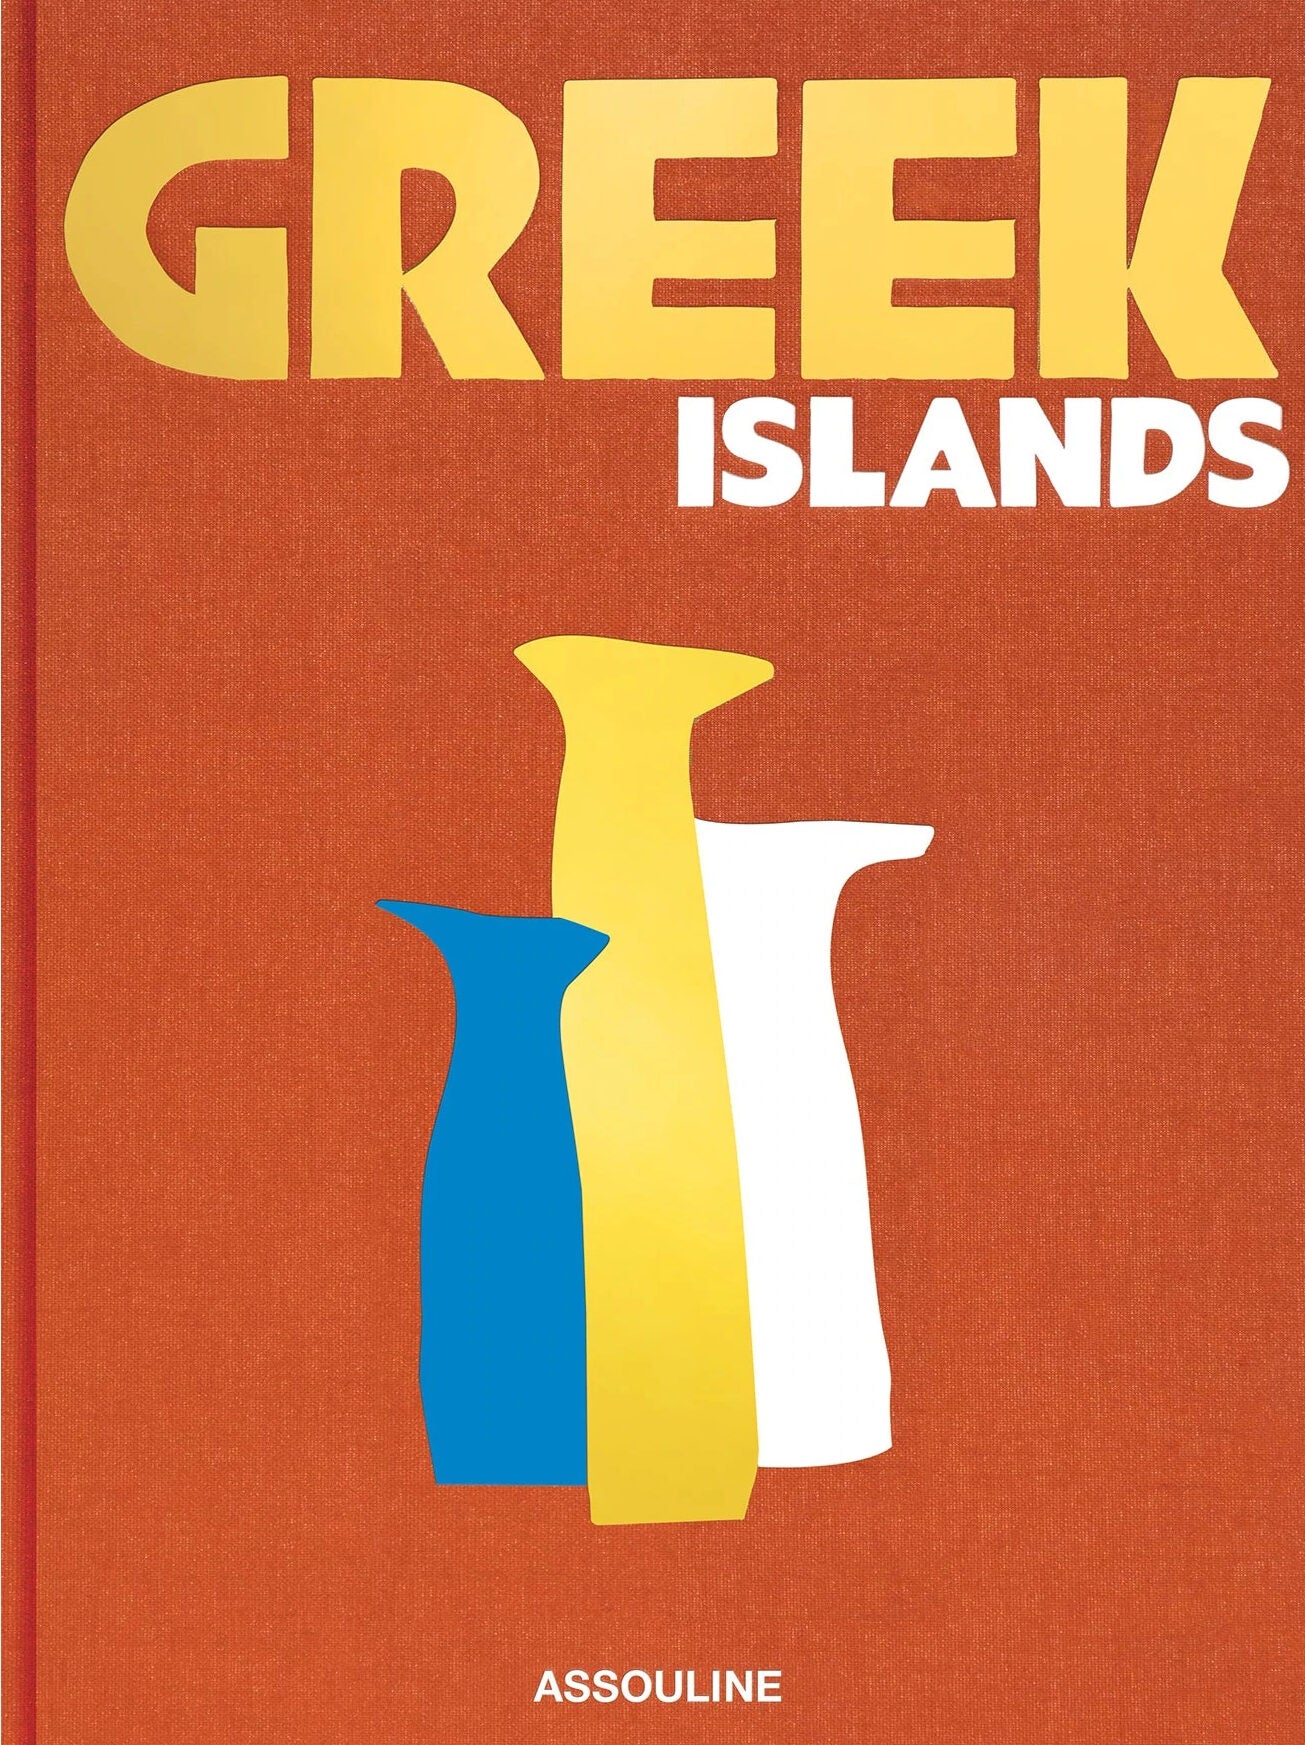 Assouline græske øer